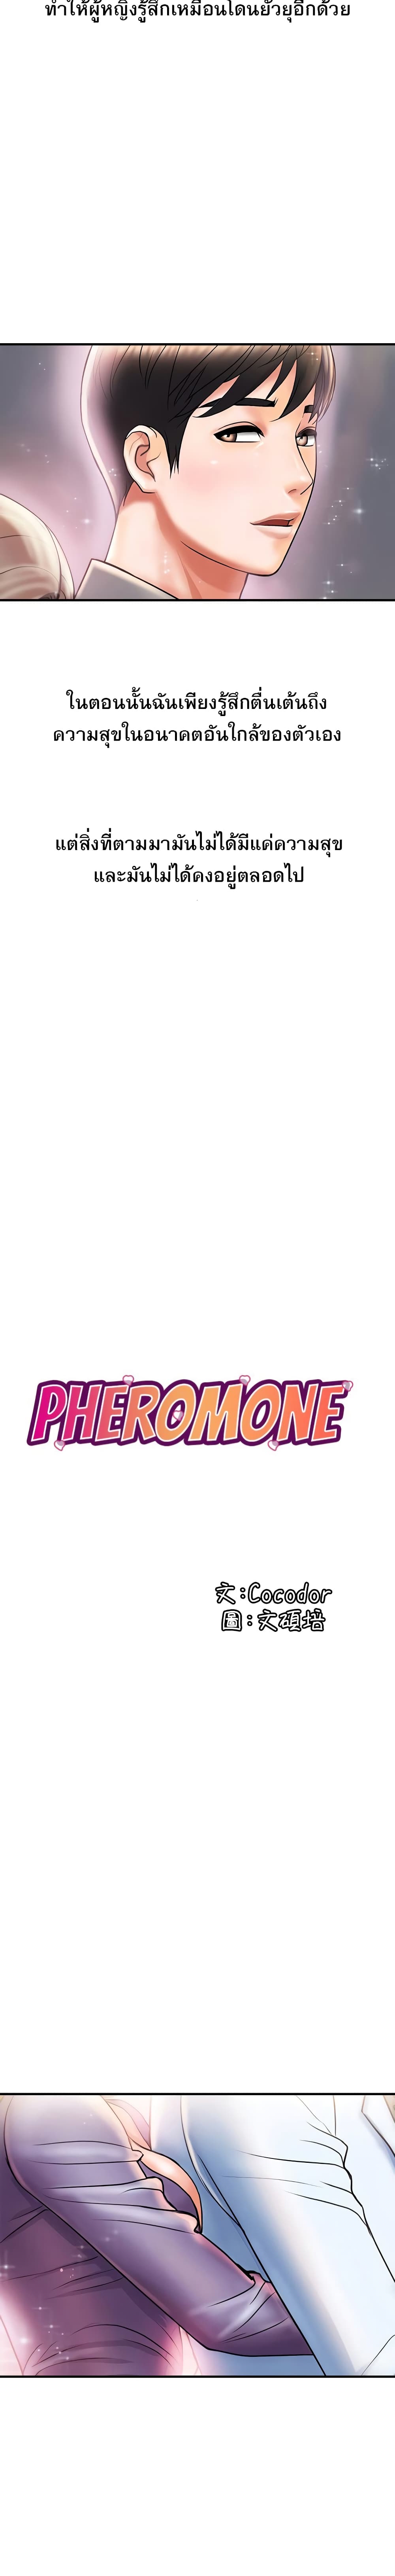 Pheromones 5 03